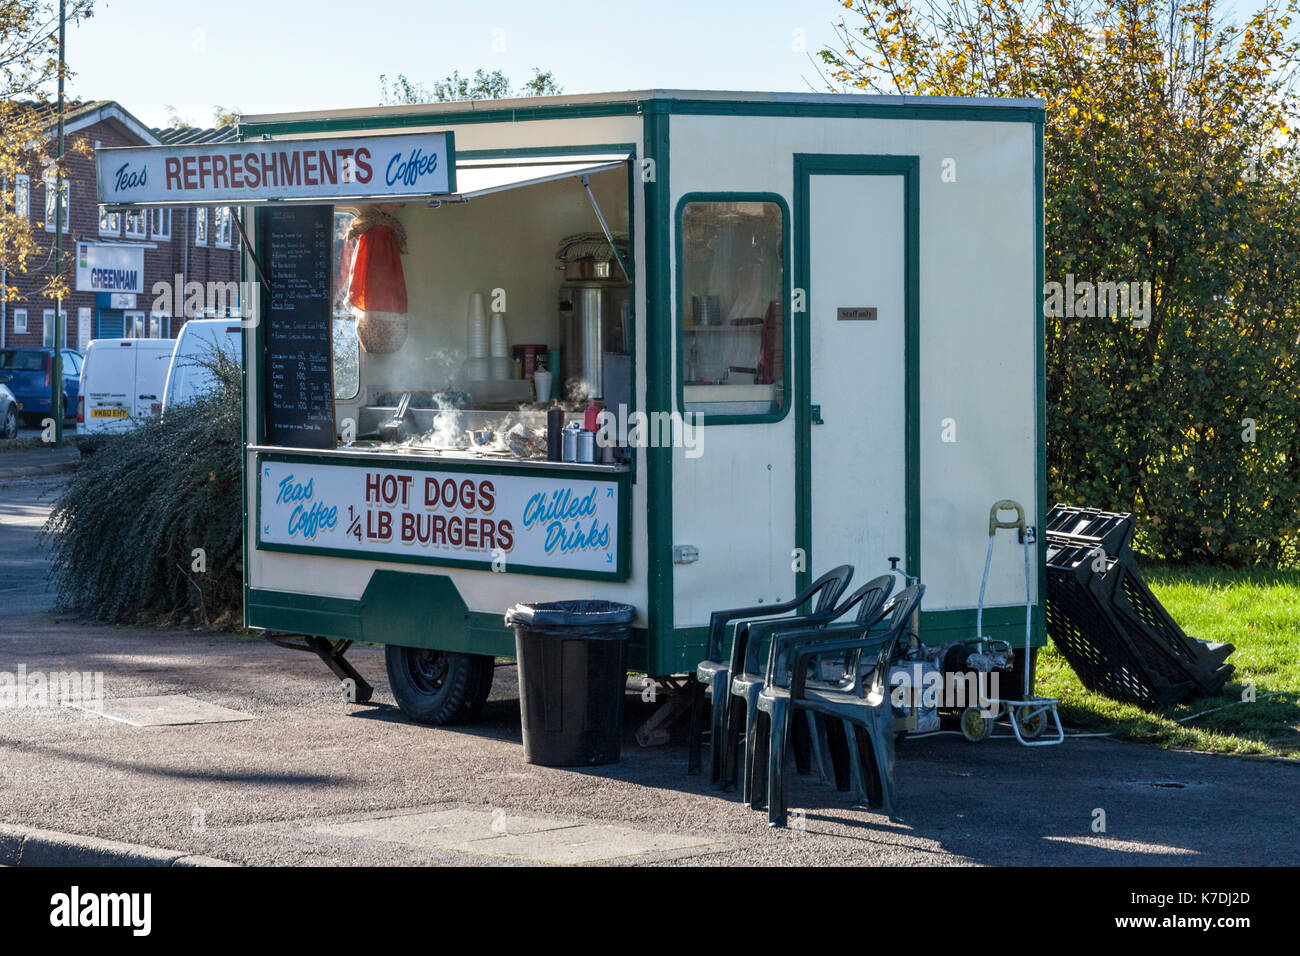 Catering en carretera: móviles de refresco de cola caliente de venta de alimentos, bebidas y otros refrescos en una calle en Nottingham, Inglaterra, Reino Unido. Foto de stock